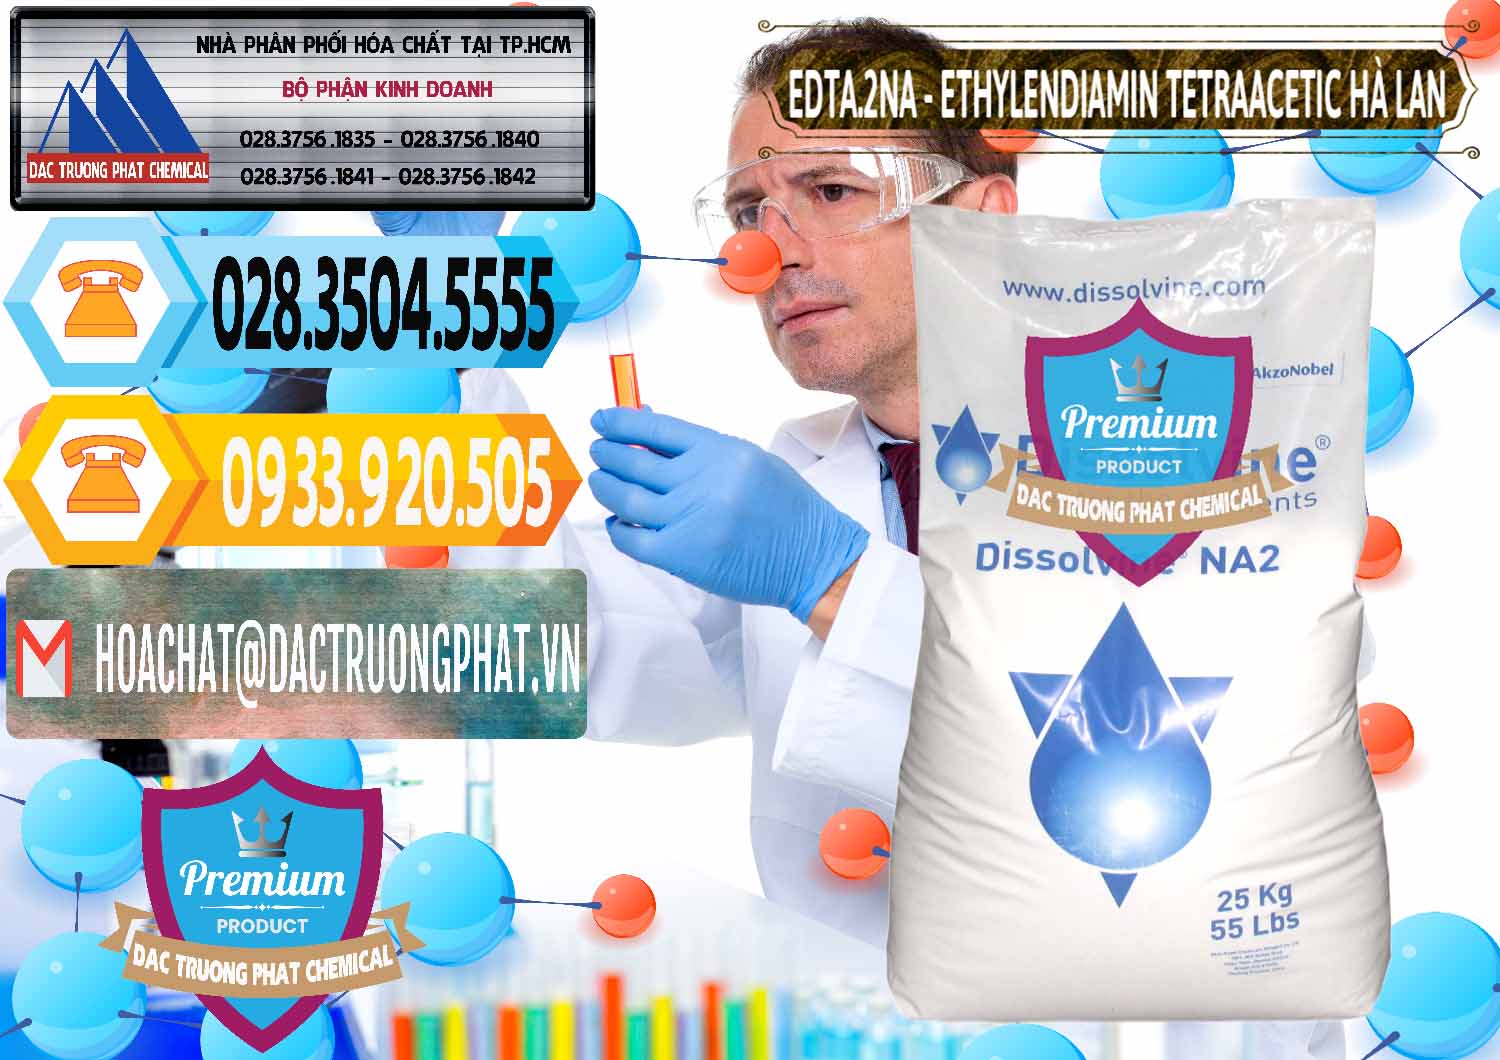 Đơn vị phân phối và bán EDTA.2NA - Ethylendiamin Tetraacetic Dissolvine Hà Lan Netherlands - 0064 - Nhập khẩu và phân phối hóa chất tại TP.HCM - hoachattayrua.net